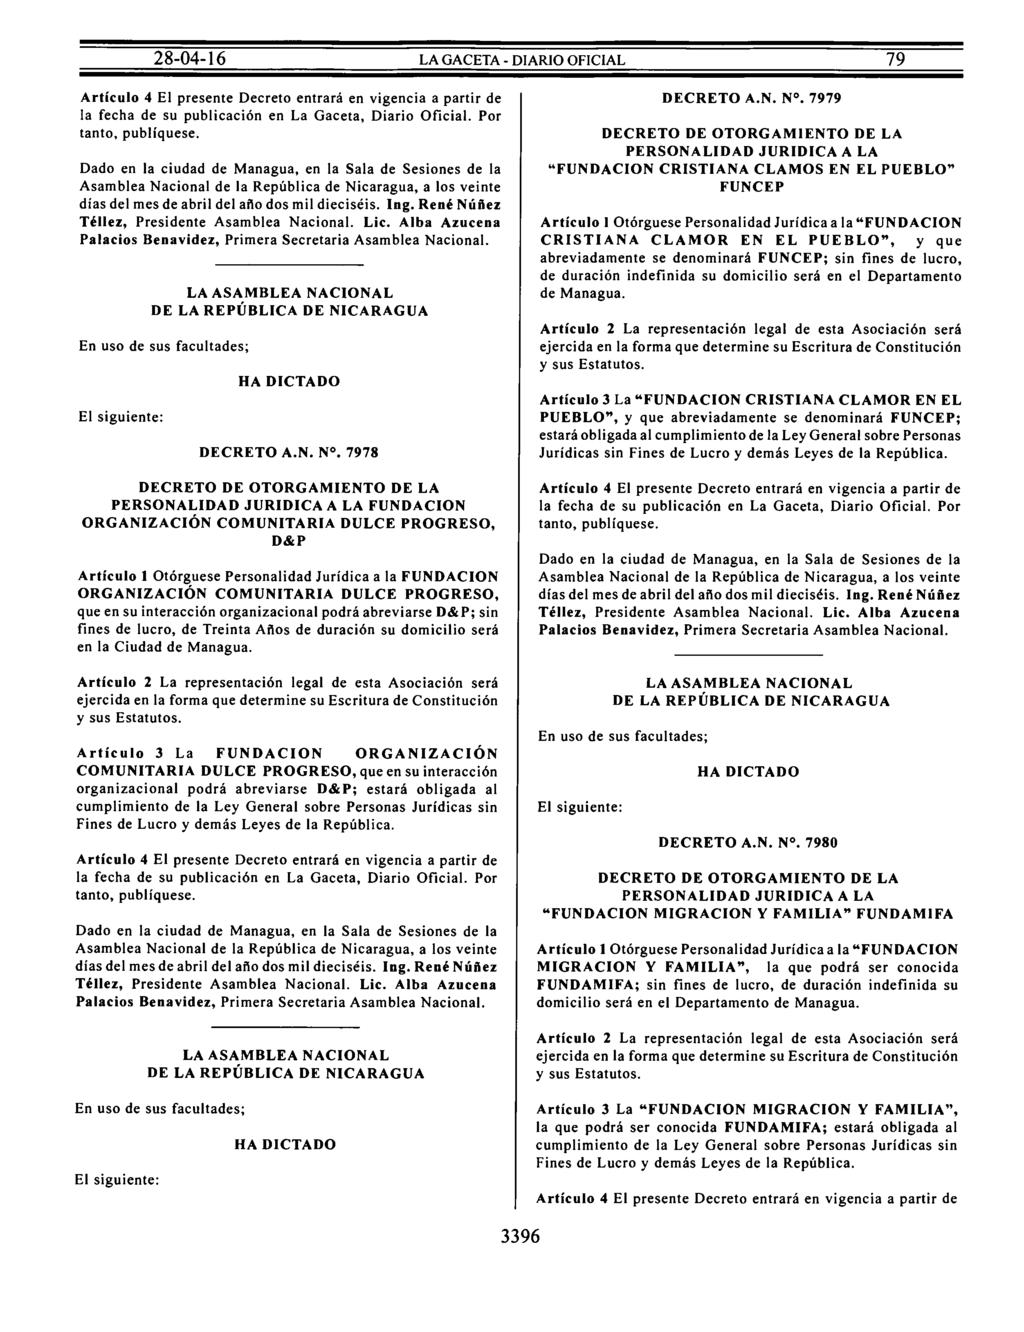 Artículo 4 El presente Decreto entrará en vigencia a partir de la fecha de su publicación en La Gaceta, Diario Oficial. Por tanto, publíquese.